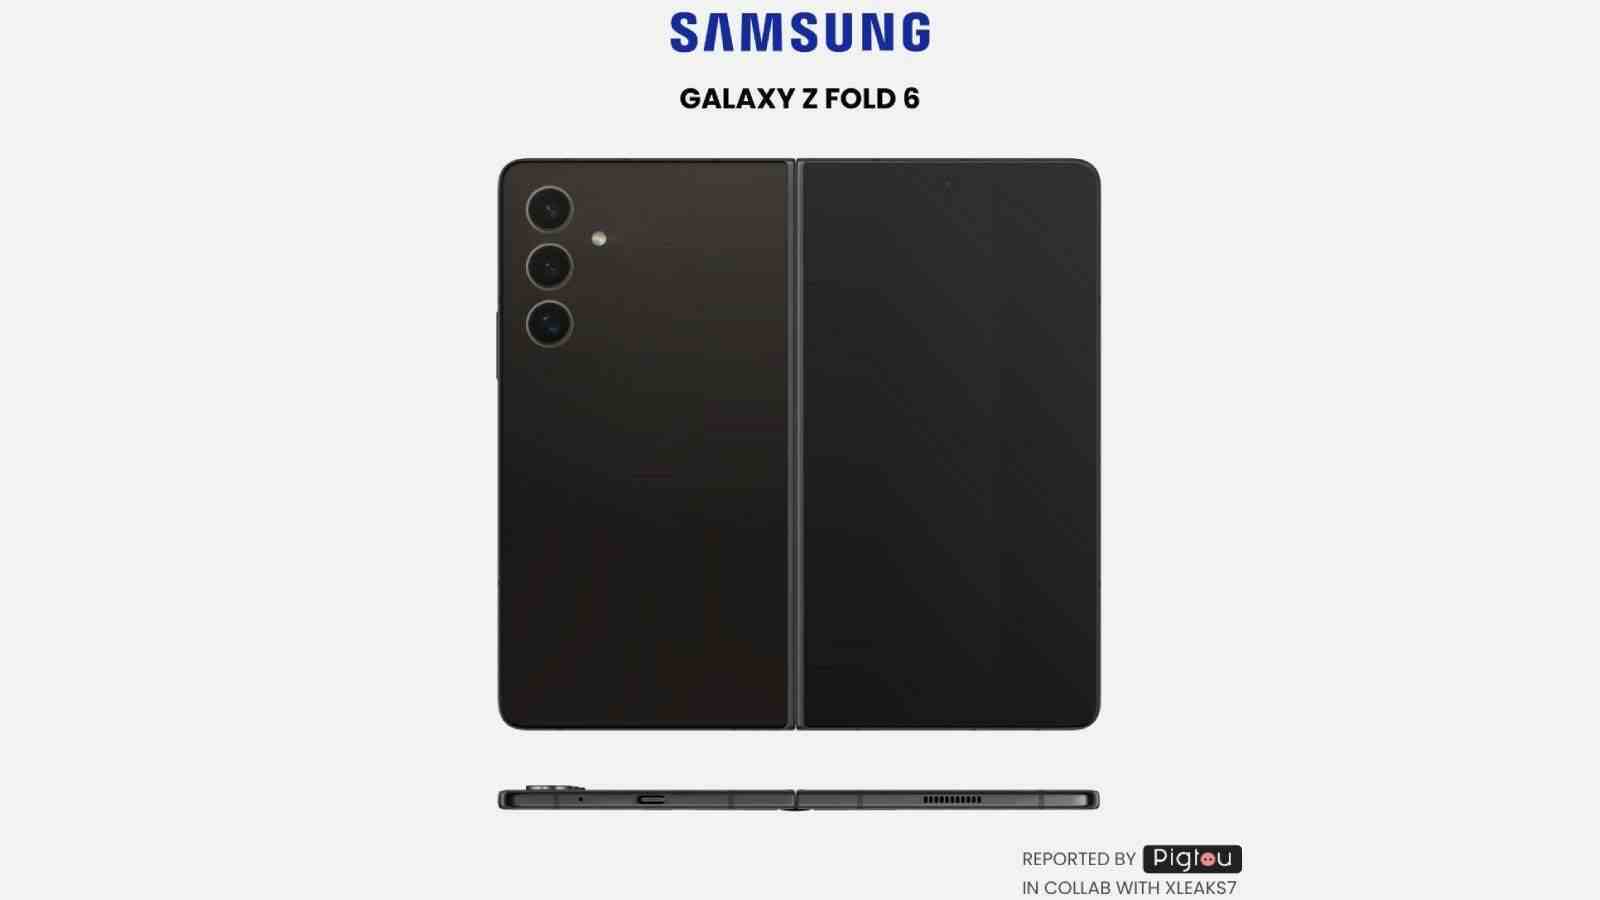 Patentten alınan bir görsel, Samsung'un Fold'u daha geniş hale getirmekle ilgilendiğini gösteriyor - Samsung sonunda katlanmış olarak da kullanabileceğiniz bir katlanabilir ürün üretecek mi?